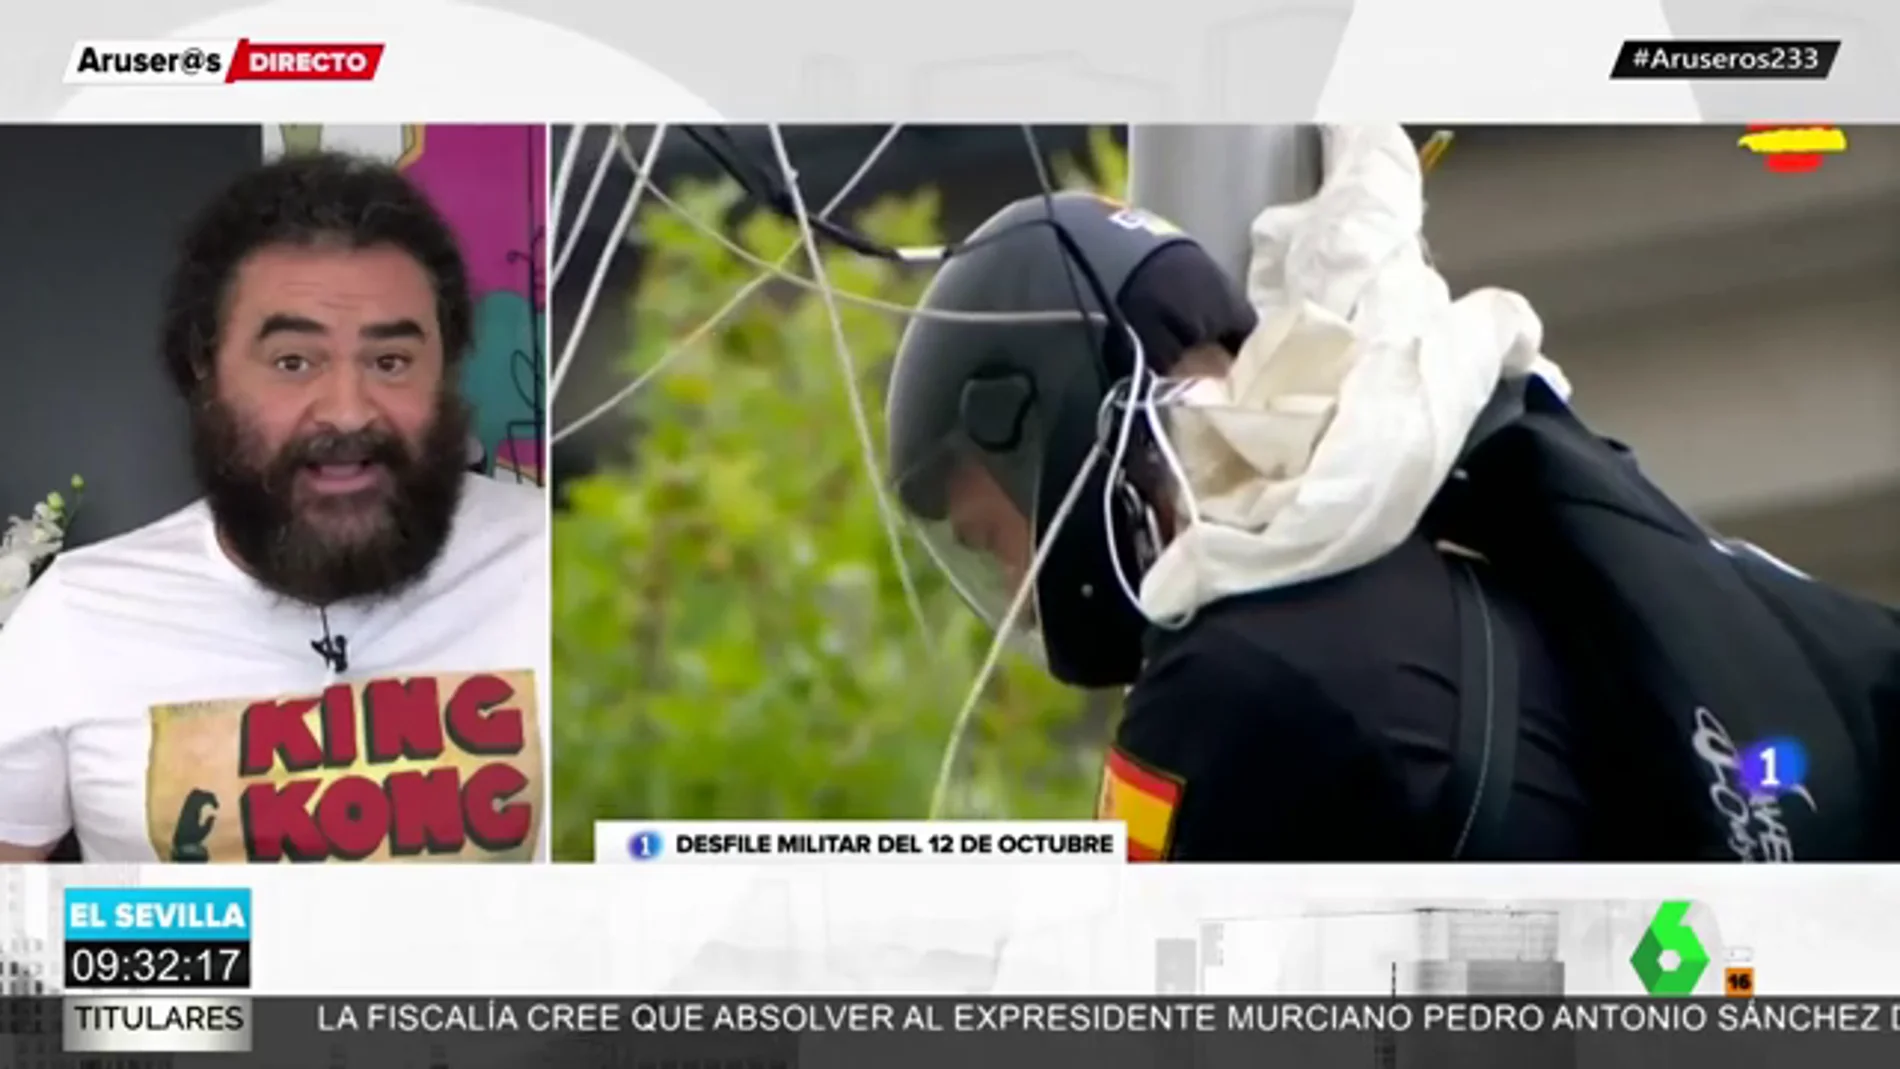 La esperada valoración de El Sevilla del choque de un paracaidista contra una farola en el 12-O